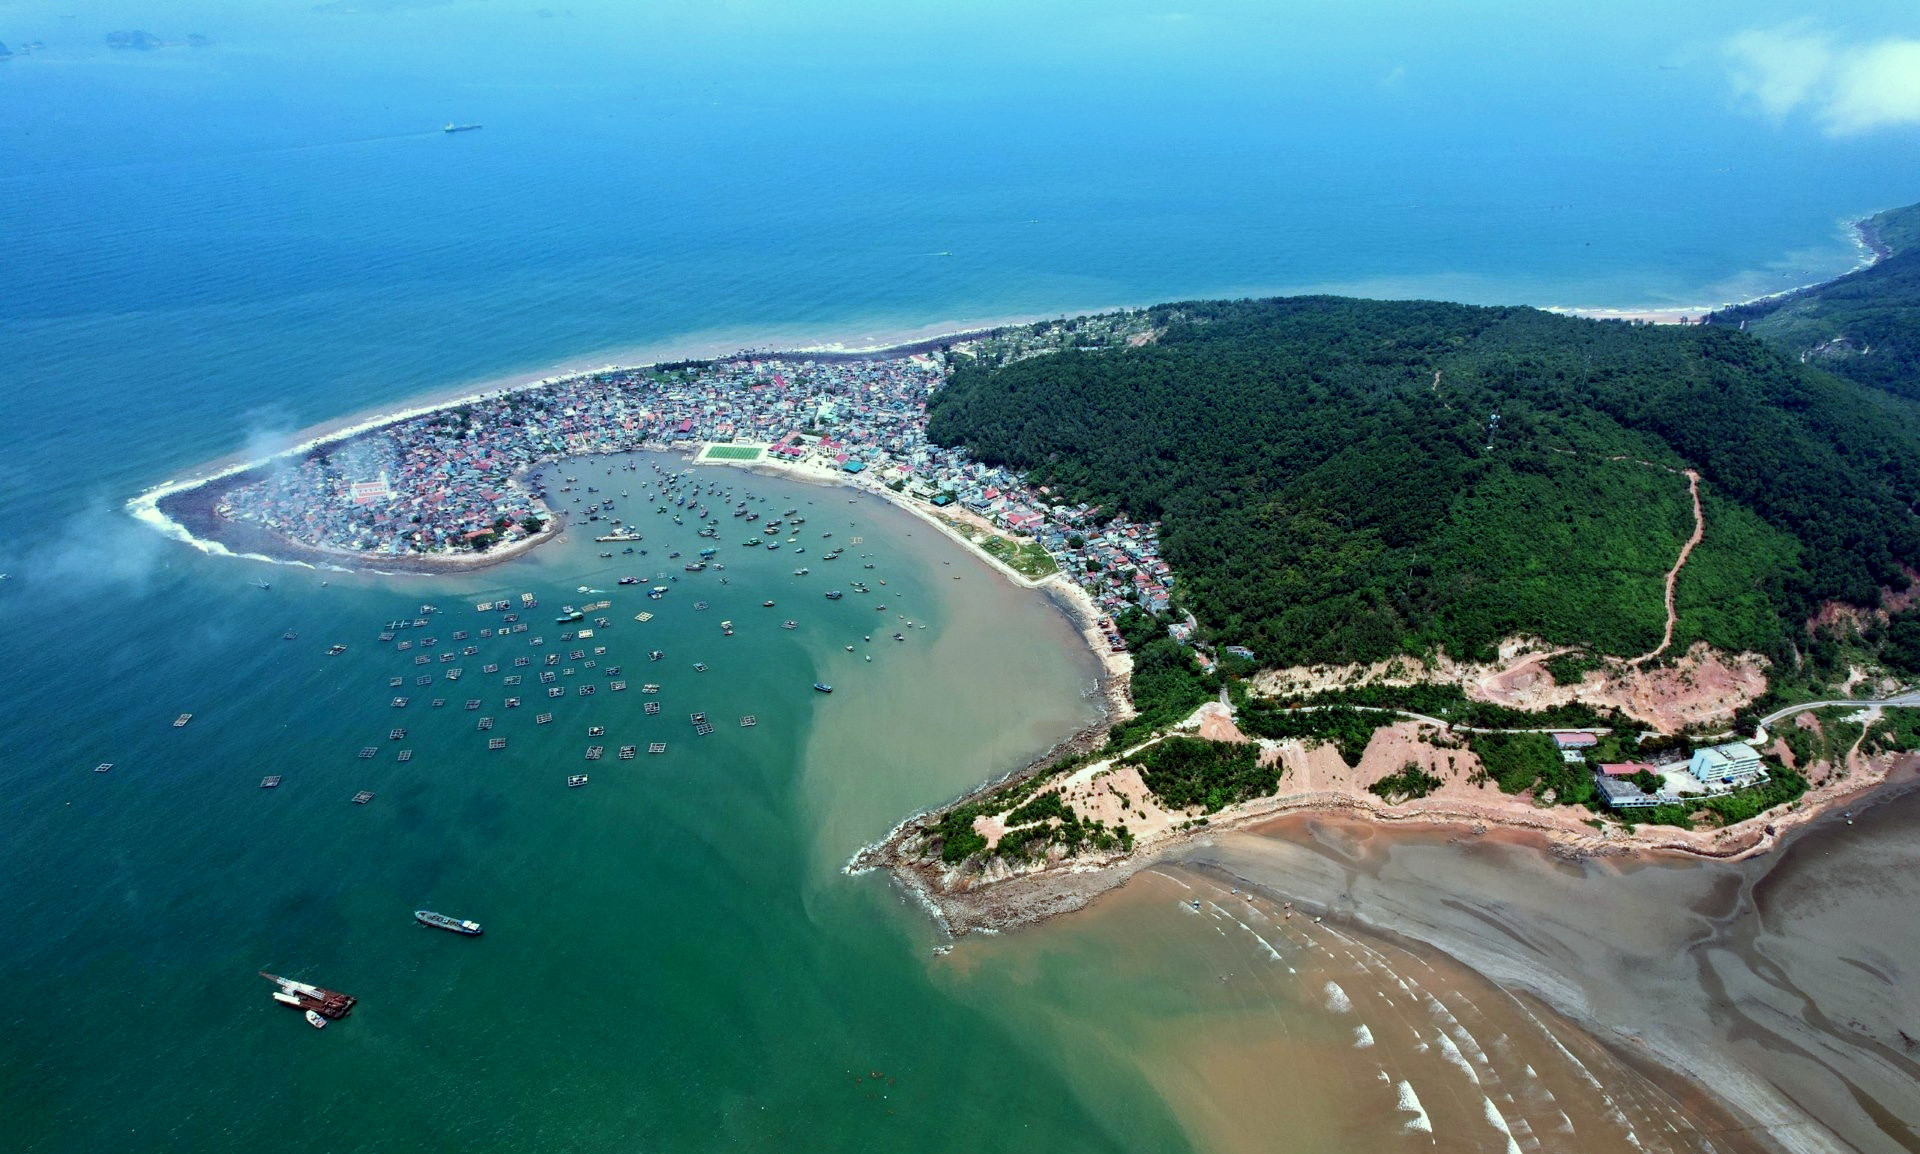 Xã đảo được ví như &quot;bàn tay khổng lồ&quot; trên biển, có nhiều điểm du lịch đẹp hoang sơ, cách Hà Nội hơn 200km- Ảnh 1.